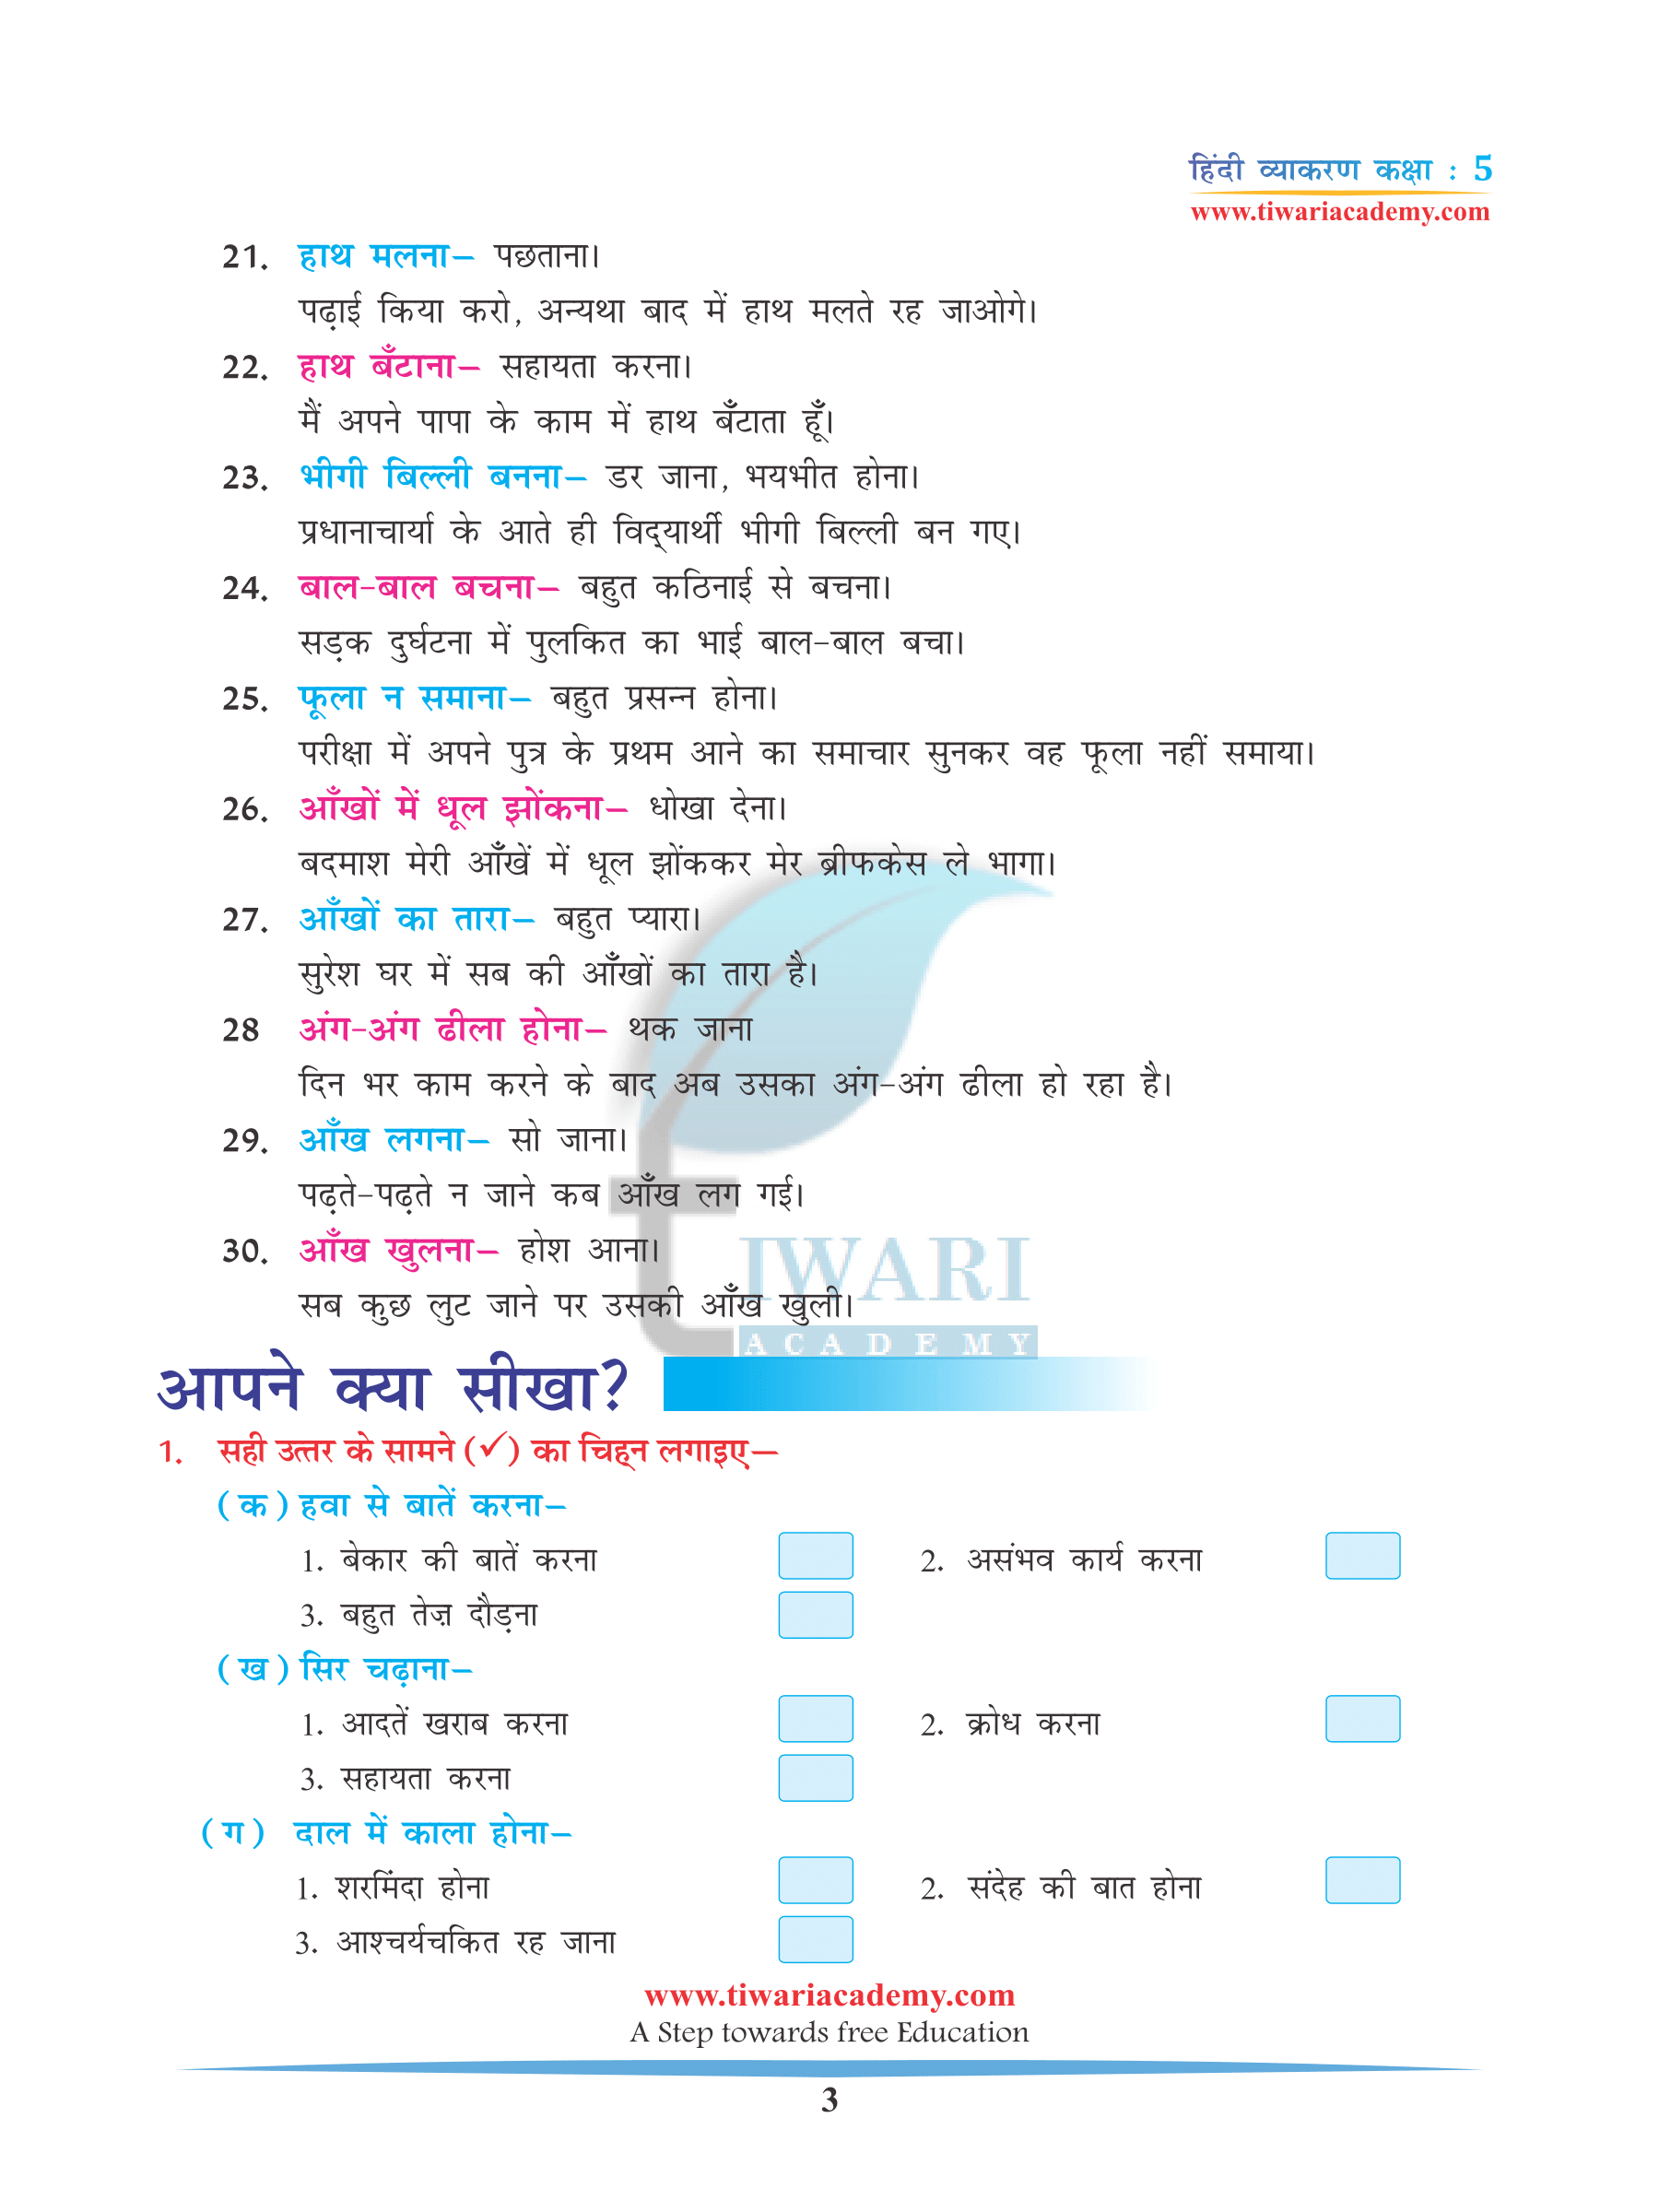 CBSE Class 5 Hindi Grammar Chapter 18